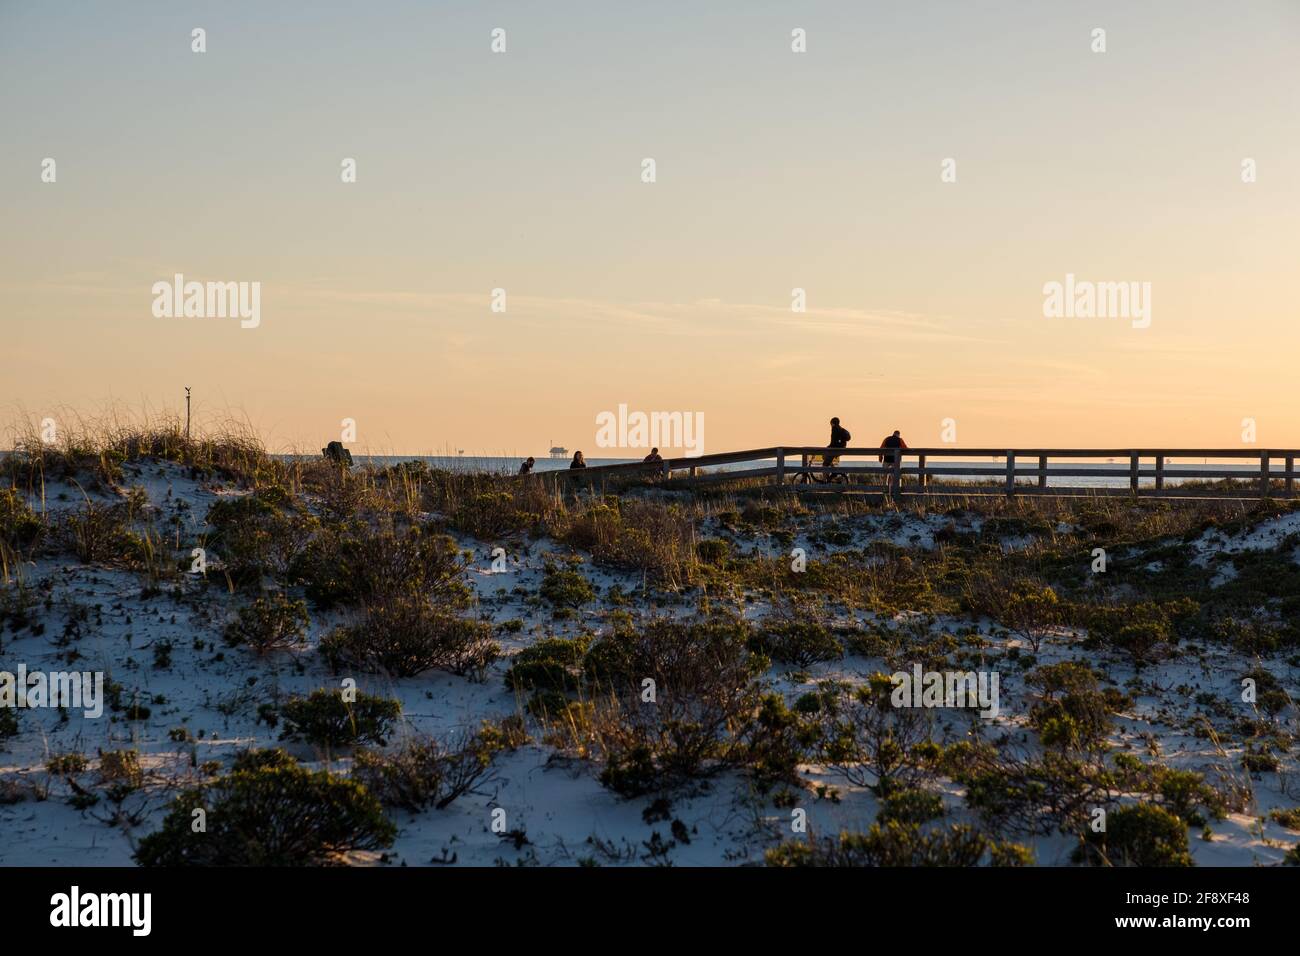 GULF SHORES, Alabama, USA - 2 APRILE 2021: Piccolo gruppo di persone dalle silhouette che camminano sul lungomare della spiaggia al tramonto Foto Stock